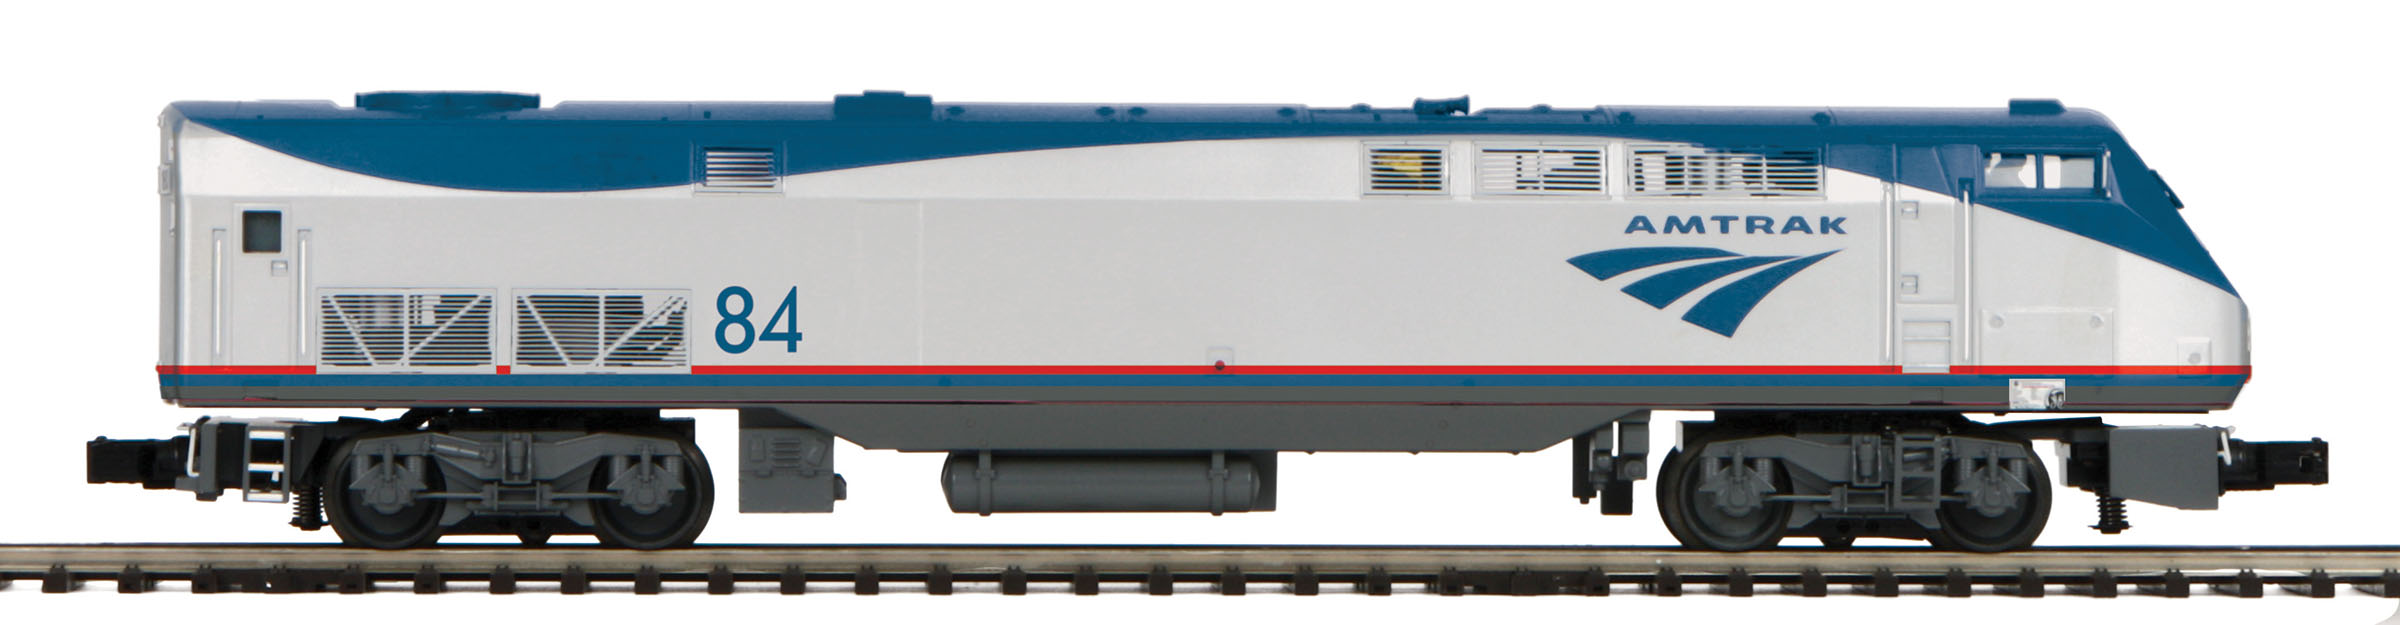 Amtrak (Wave) Genesis Diesel Engine image